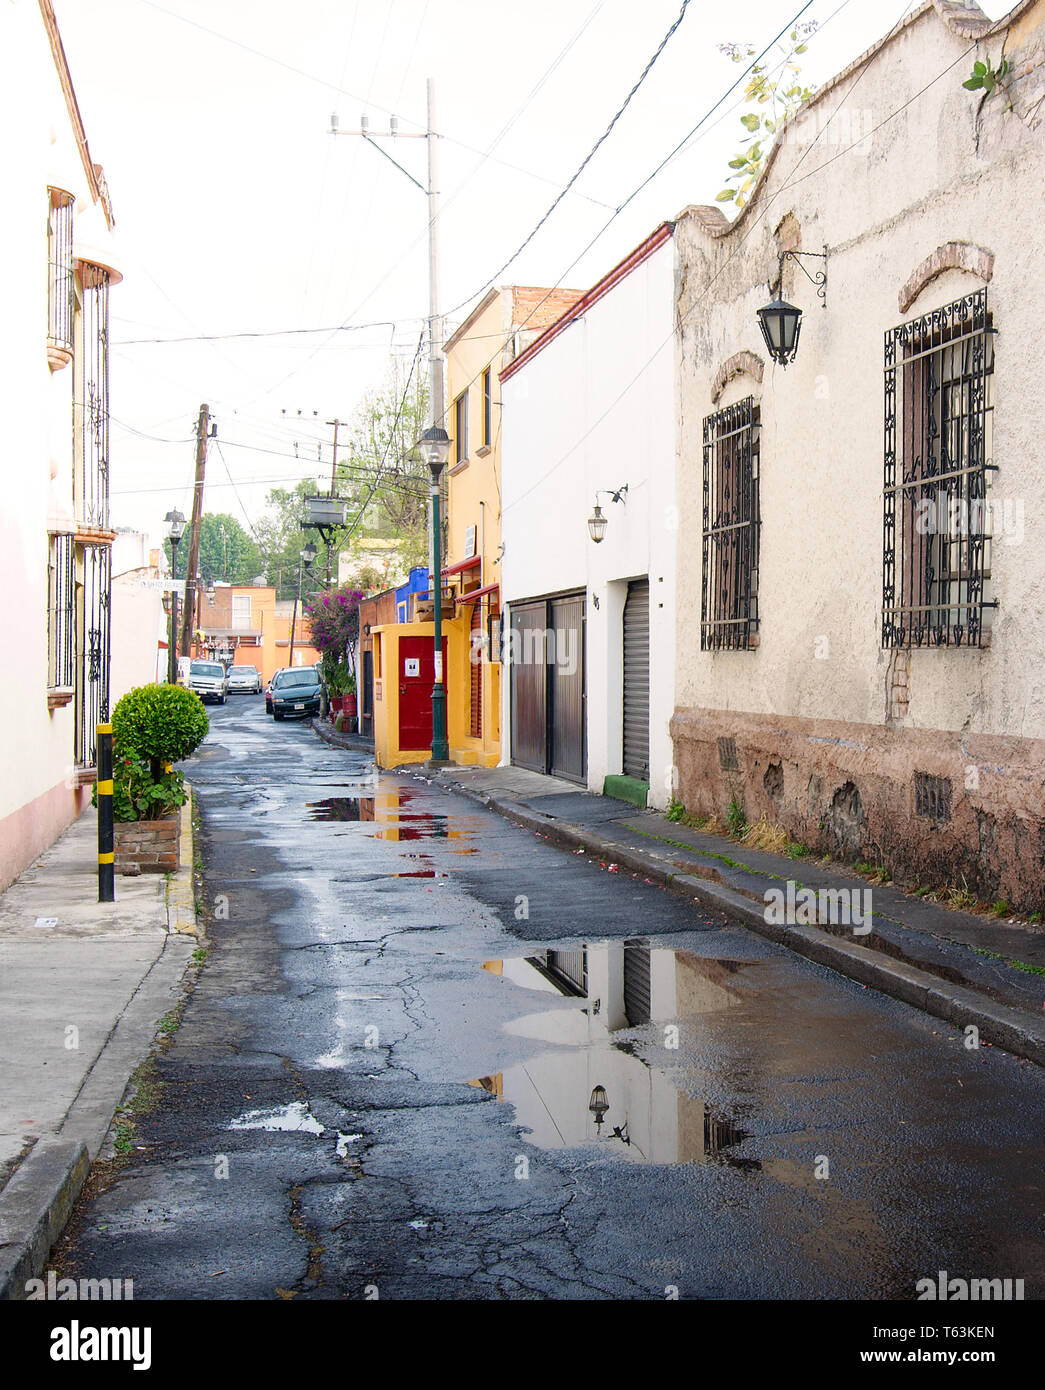 Mexiko City, Mexiko - 2019: Blick auf eine traditionelle Straße mit alten Häusern im historischen Coyoacan Bezirk nach einer kurzen Regen. Stockfoto